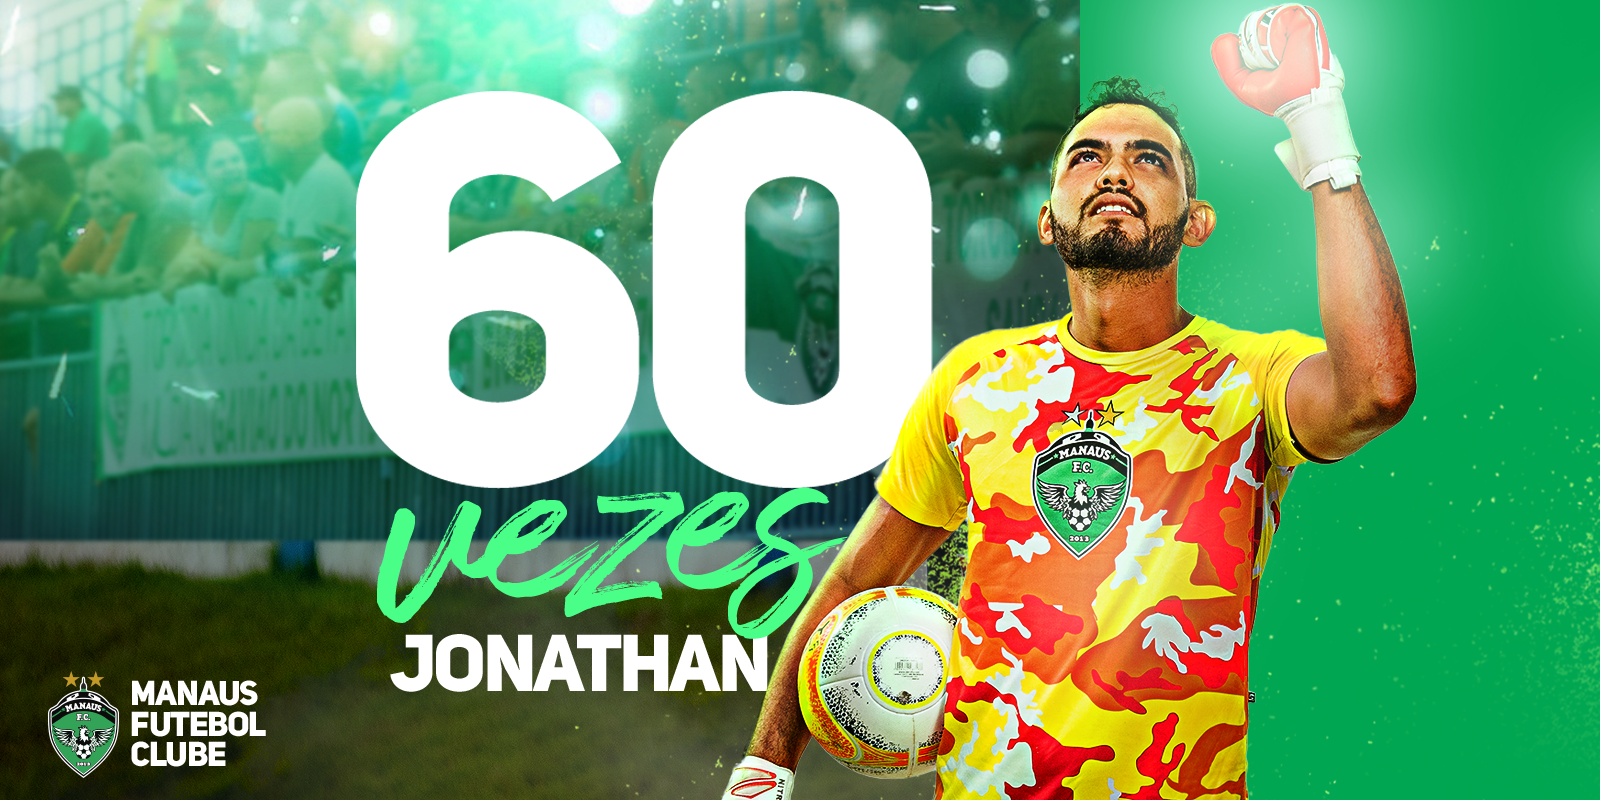 60 vezes Jonathan